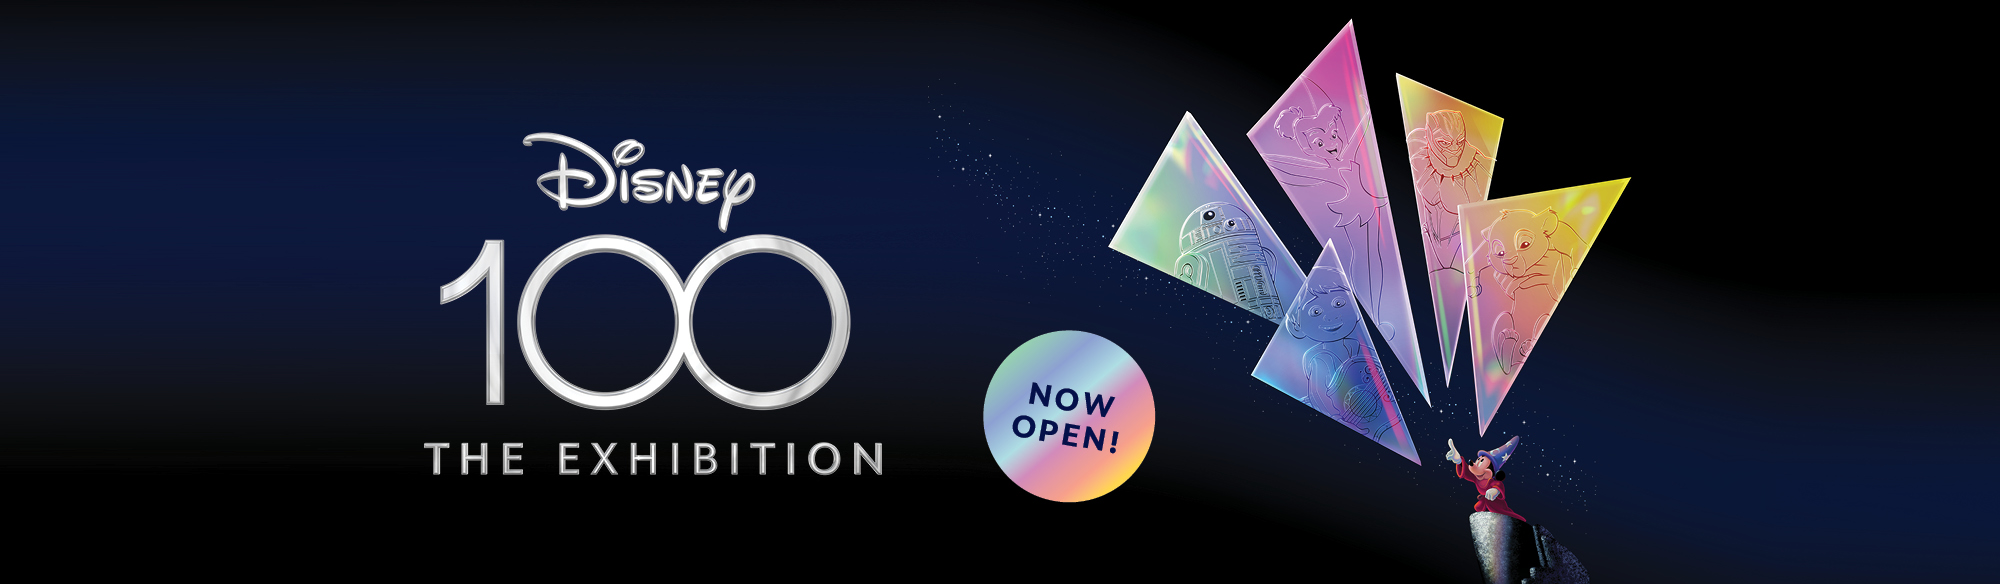 Disney100: The Exhibition - Now Open